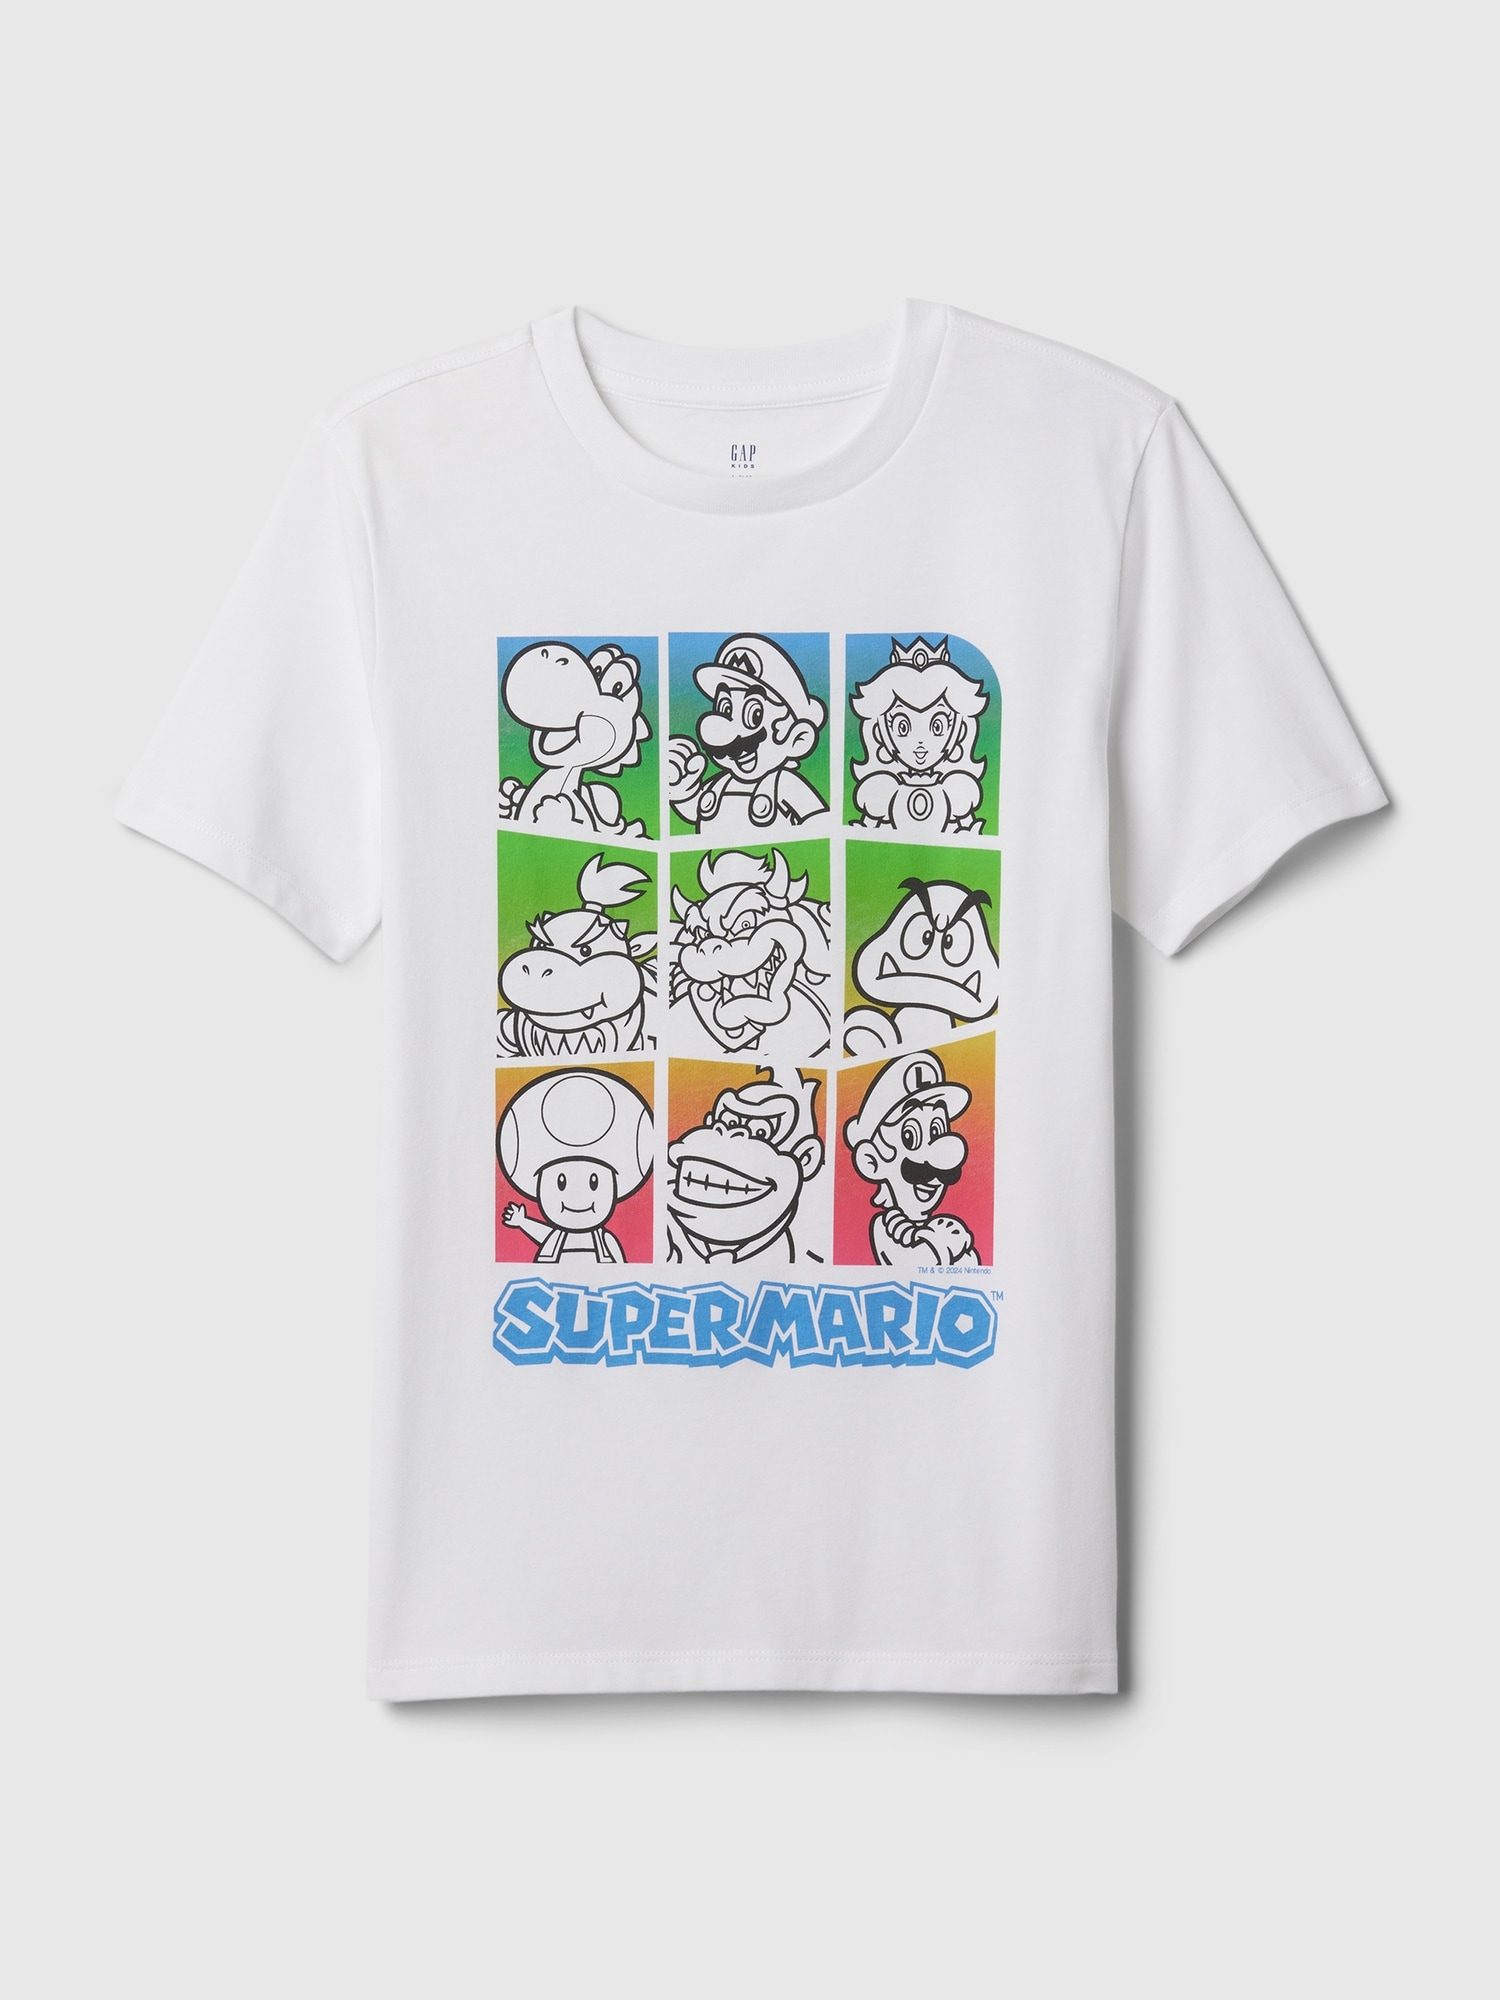 Kids Gamer Graphic T-Shirt